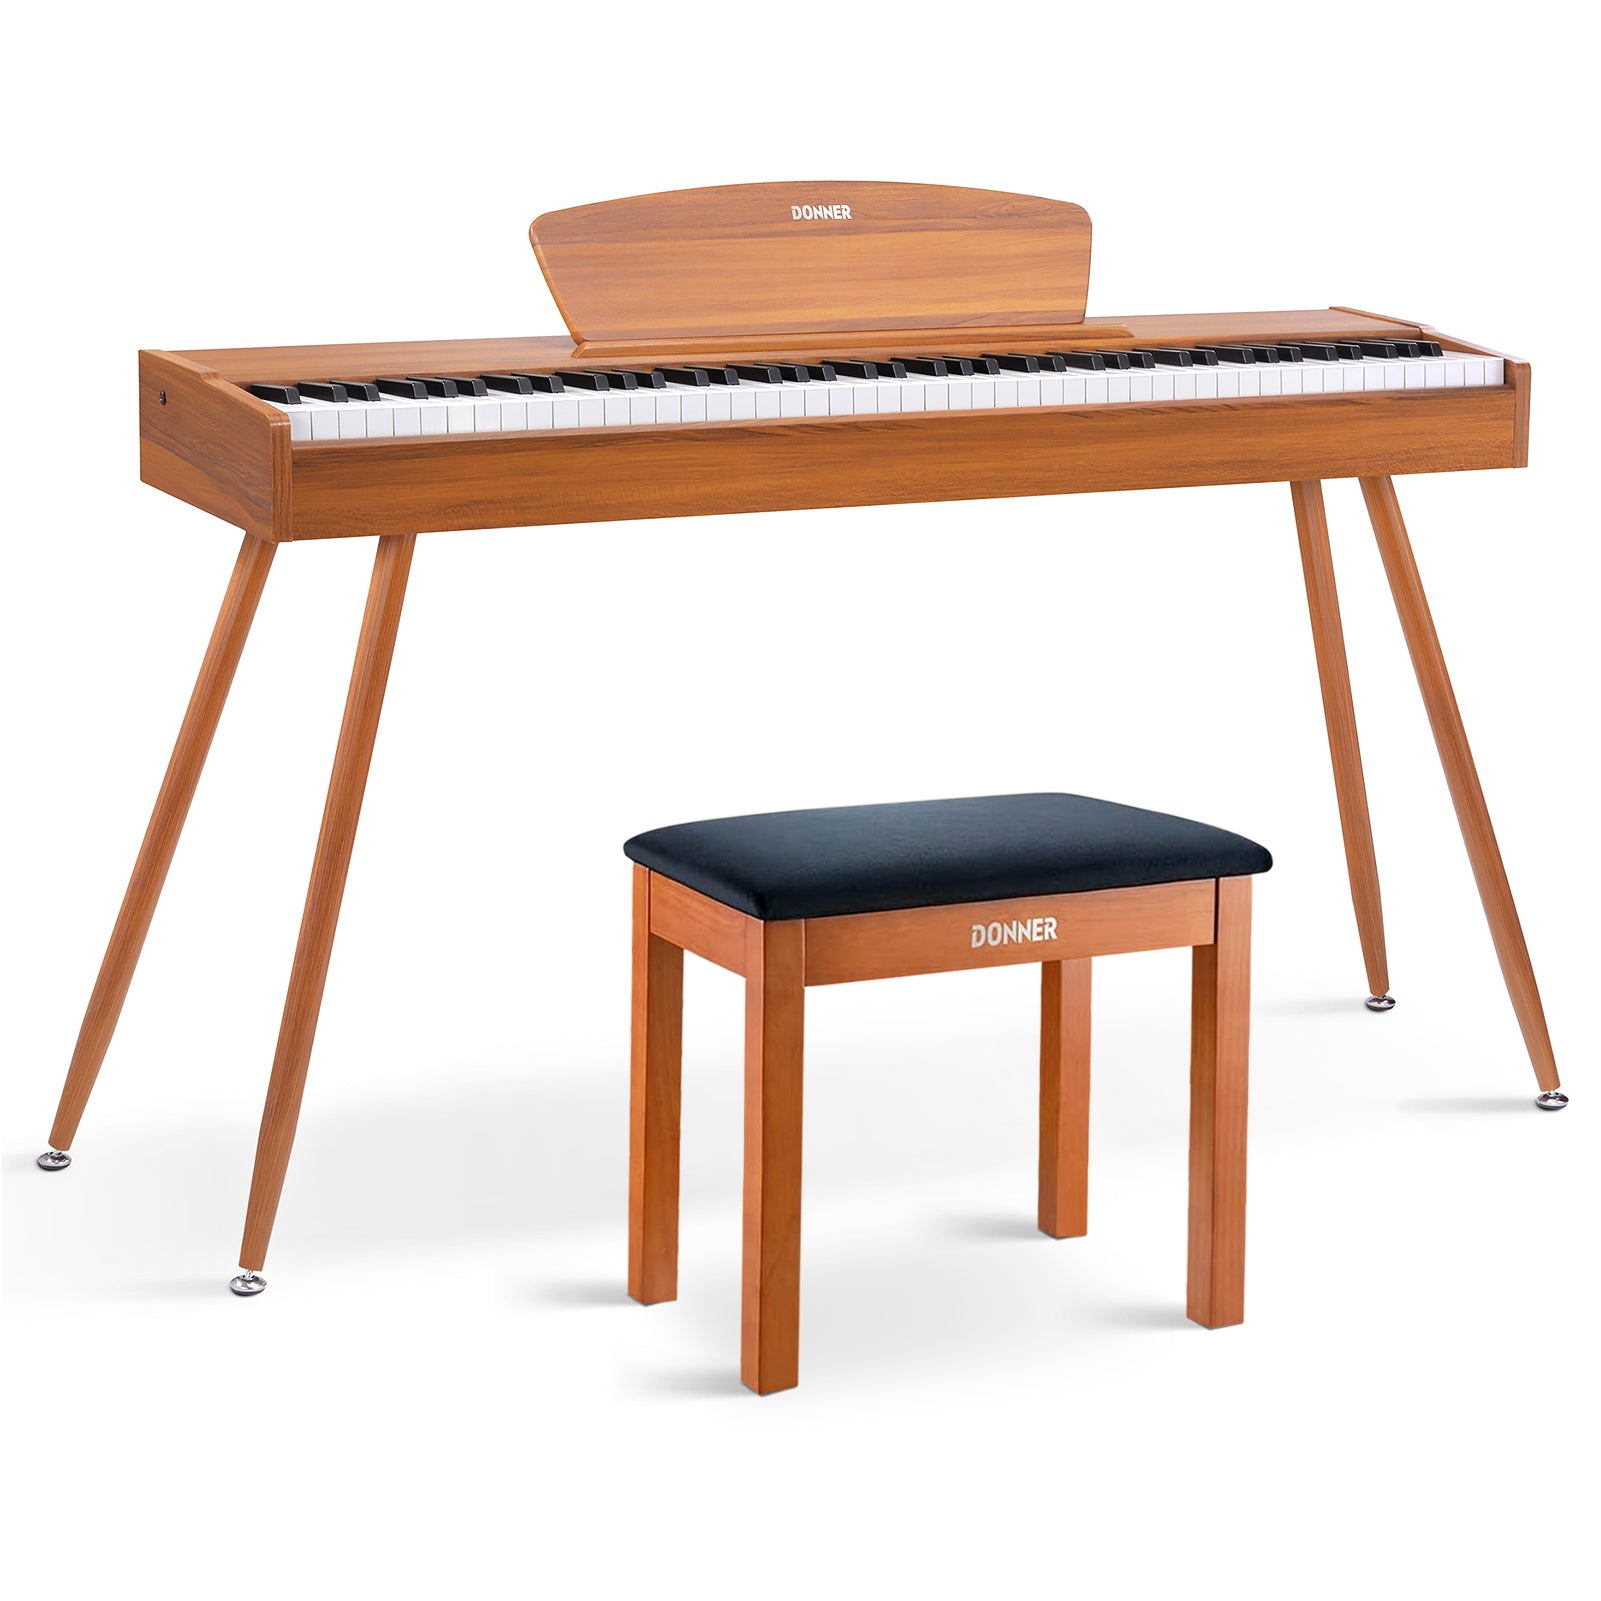 Donner DDP-80 Digital-Piano für Zuhause 88 gewichtete Tasten & Stilvolles Holzdesign mit 3 Pedale - Natürlich / Piano + Hölzerner Klavierbank von Donner